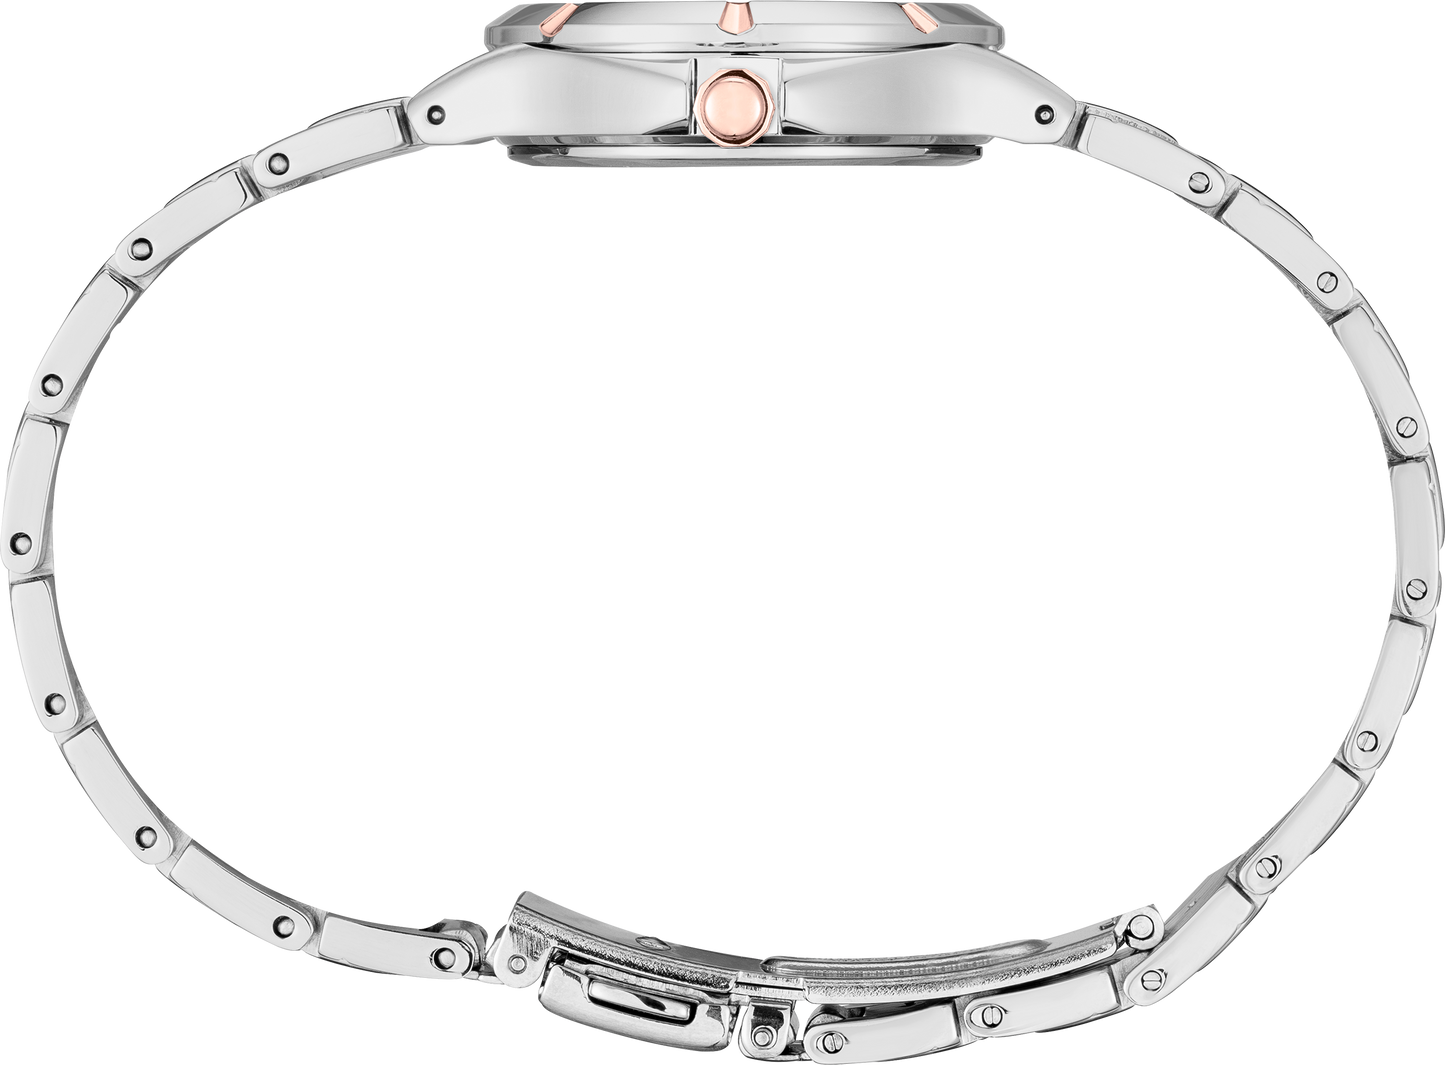 SEIKO Women's Two-Tone Stainless Steel White Dial Watch SUR416